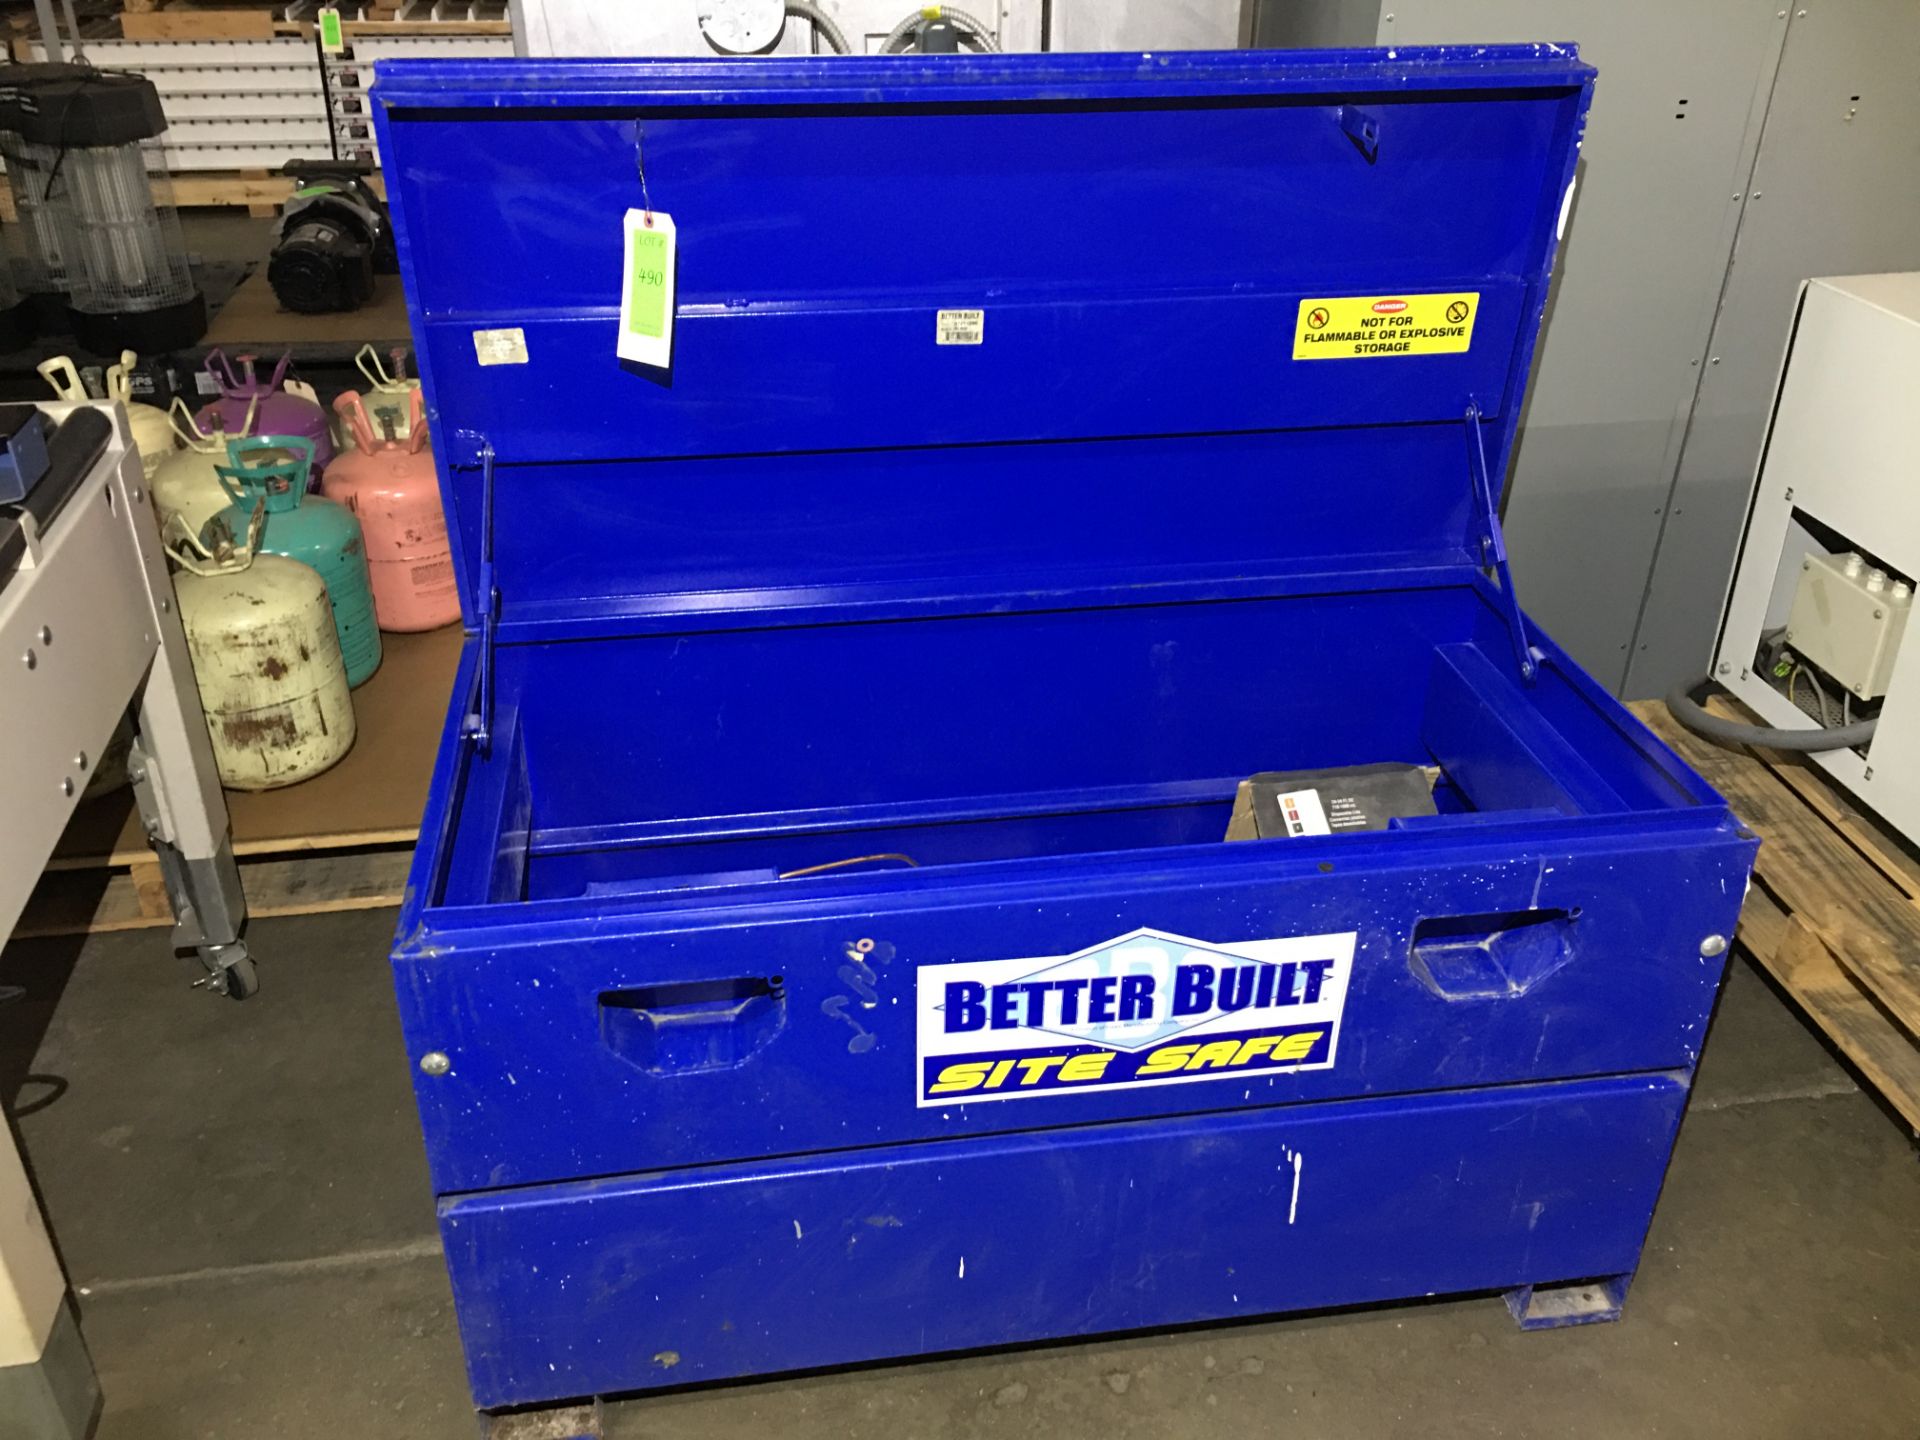 Better Built Site Safe Job Box